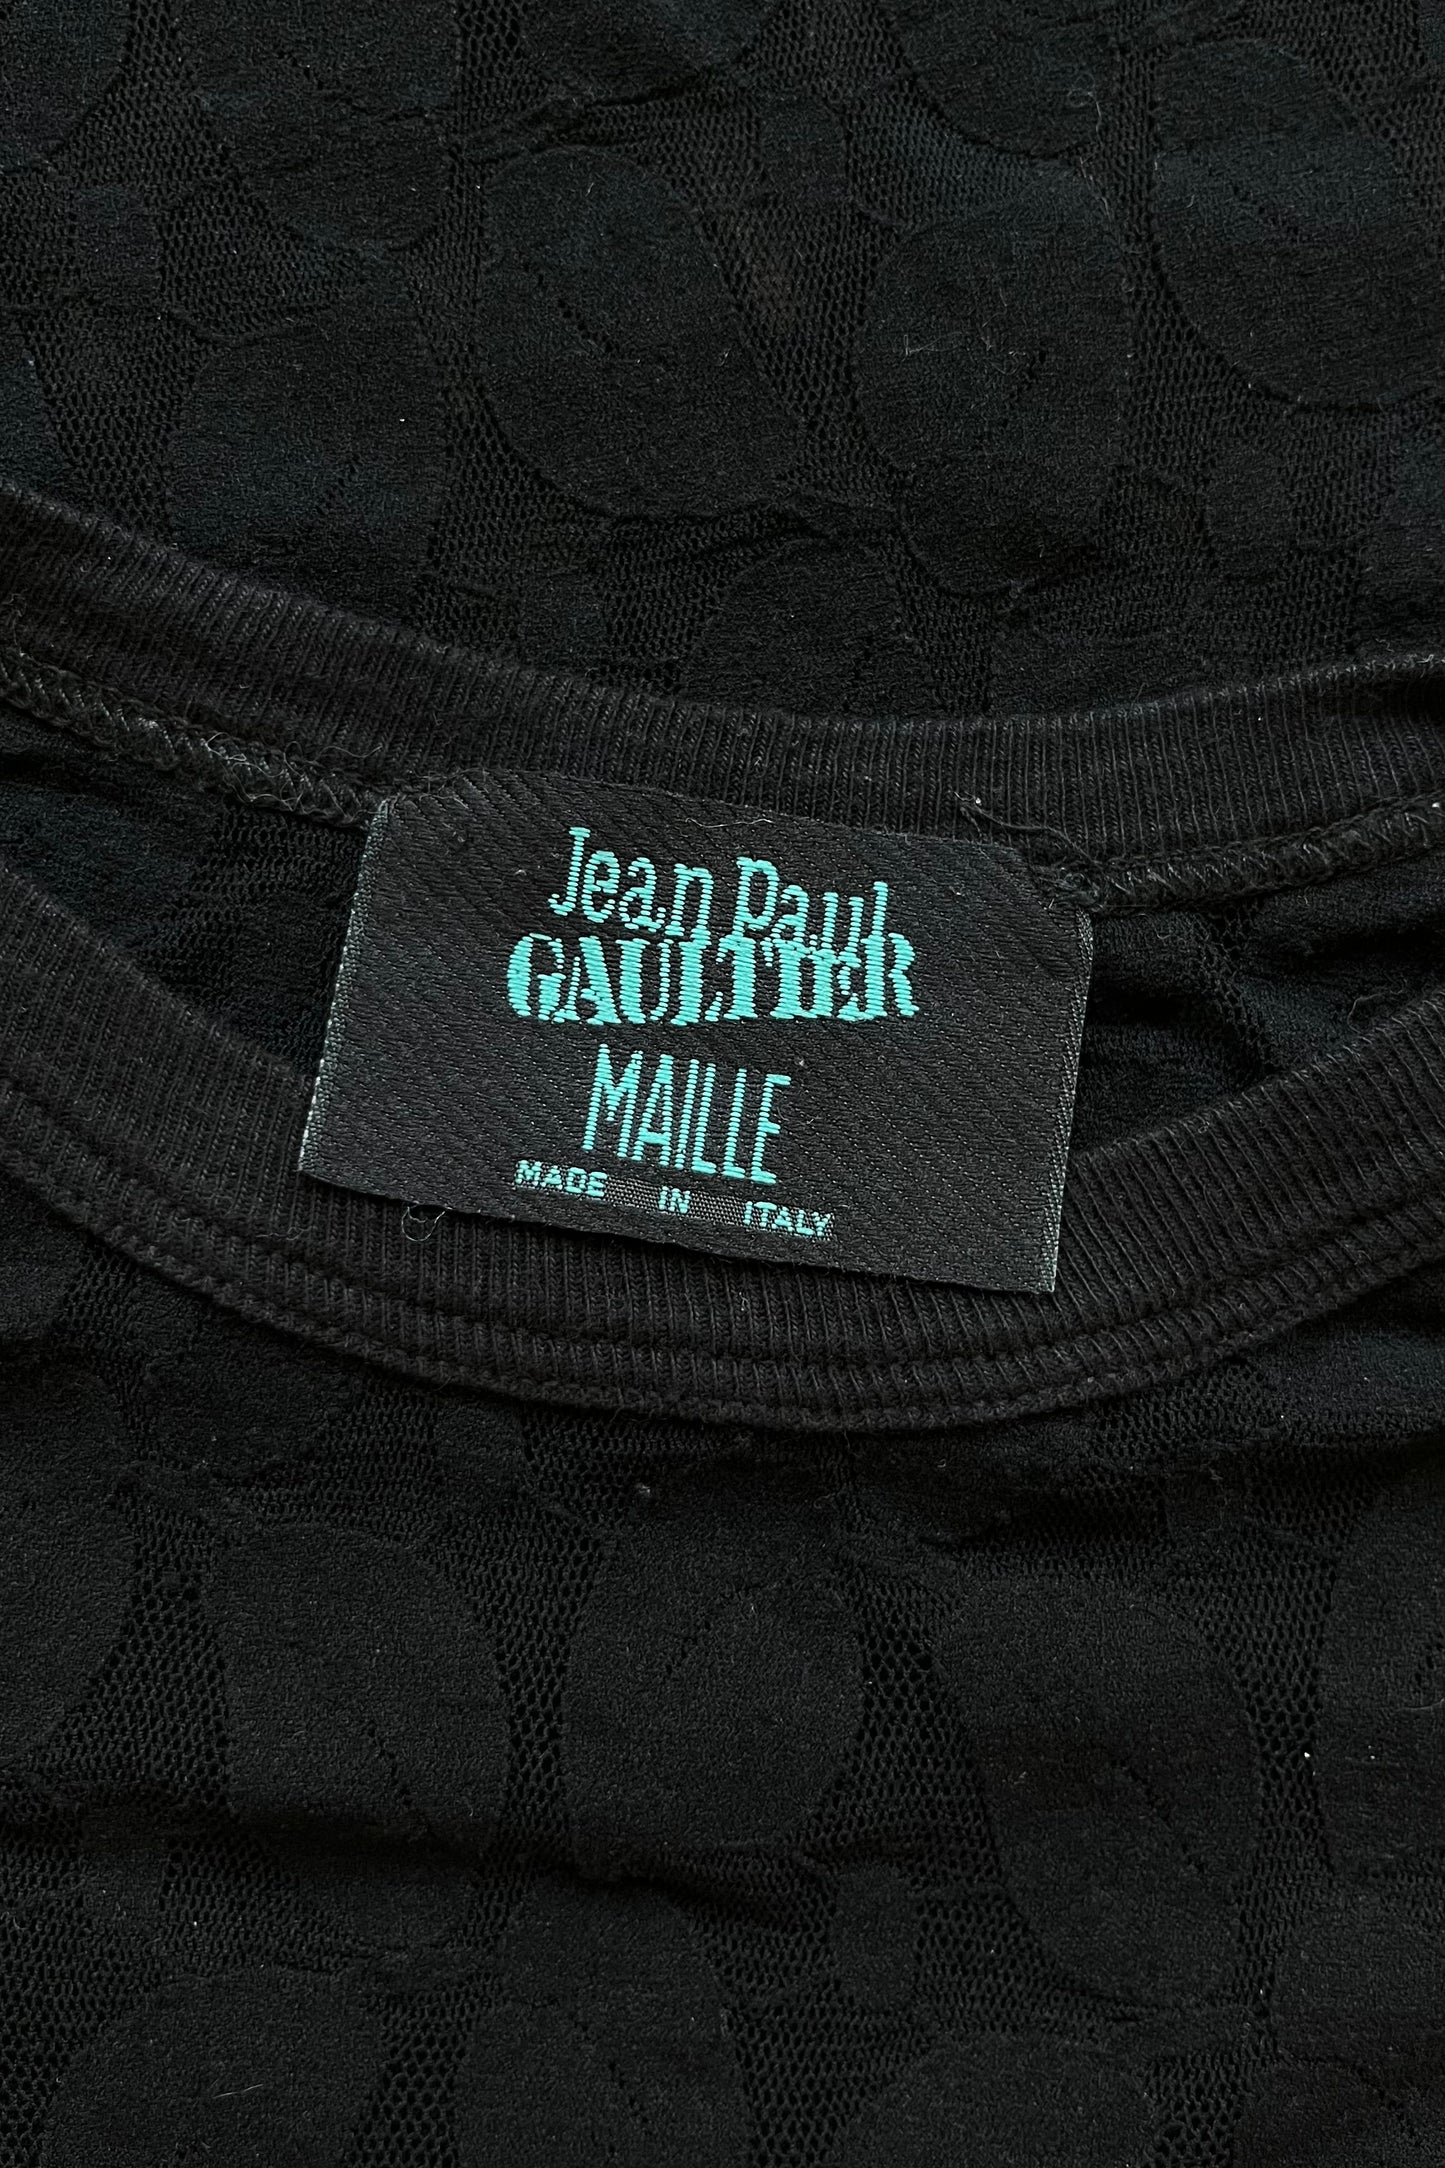 Jean Paul Gaultier Lace Top